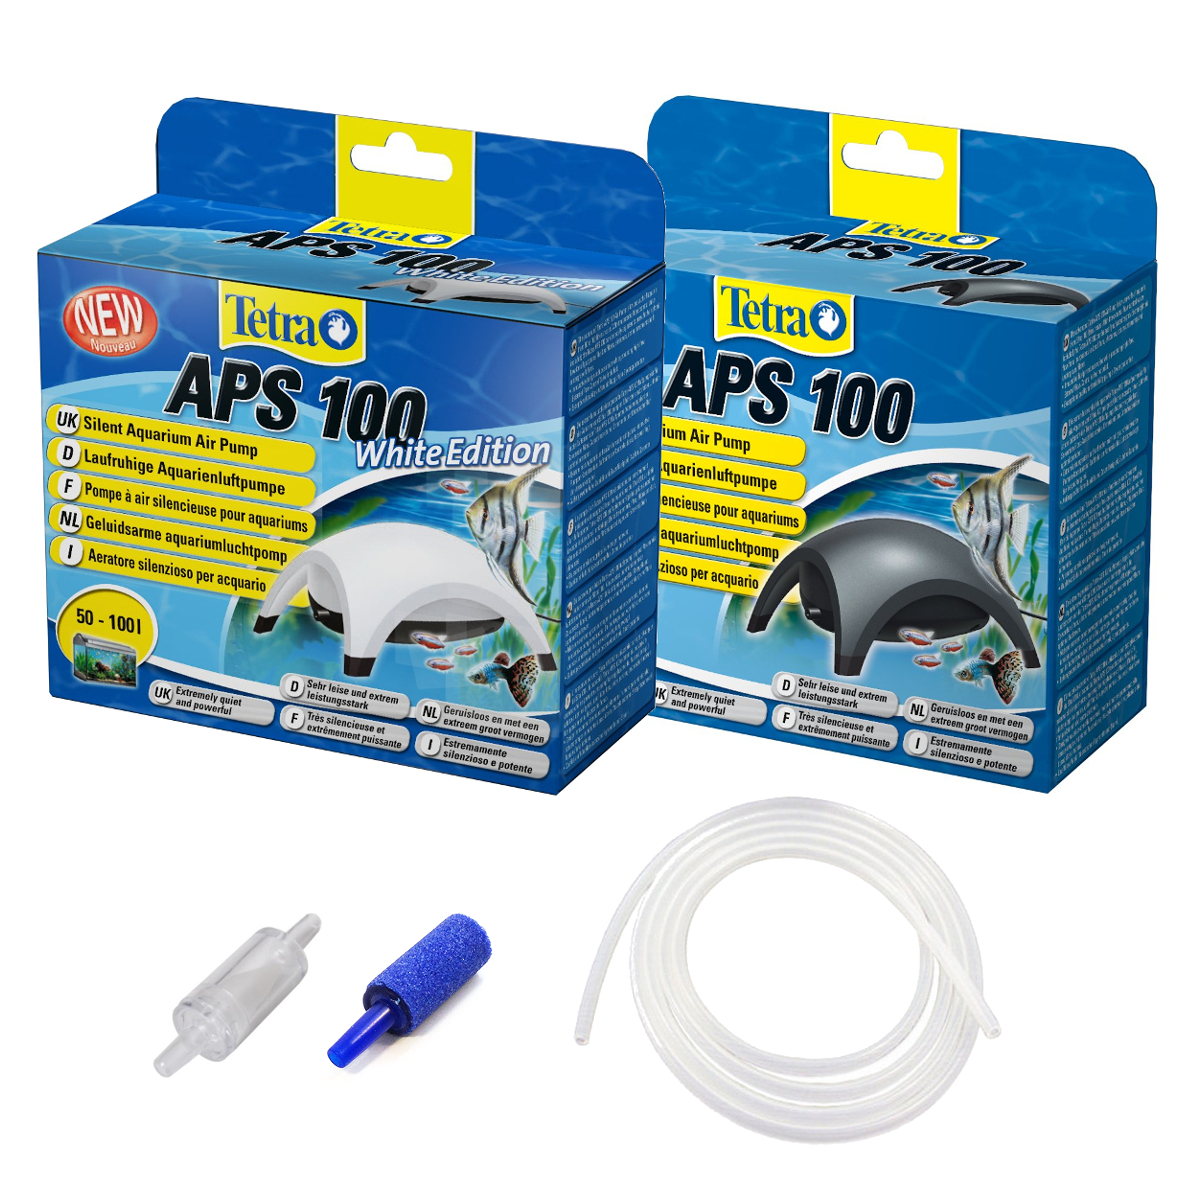 Tetra APS 150 Aquarienluftpumpe sehr leise Luftpumpe für 80-150l